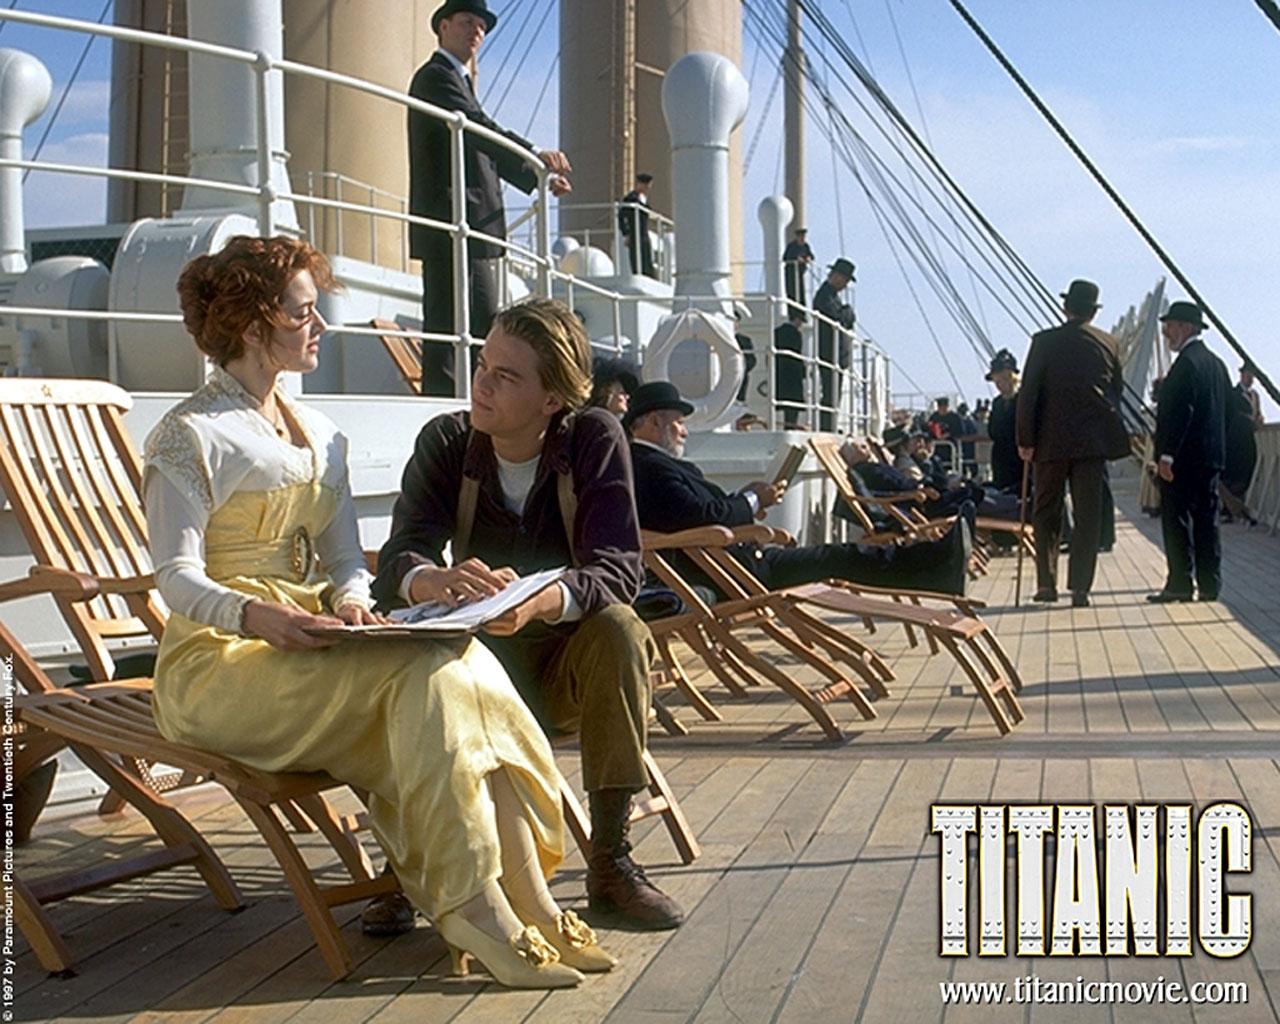 Titanic Wallpaper #2 1280 x 1024 